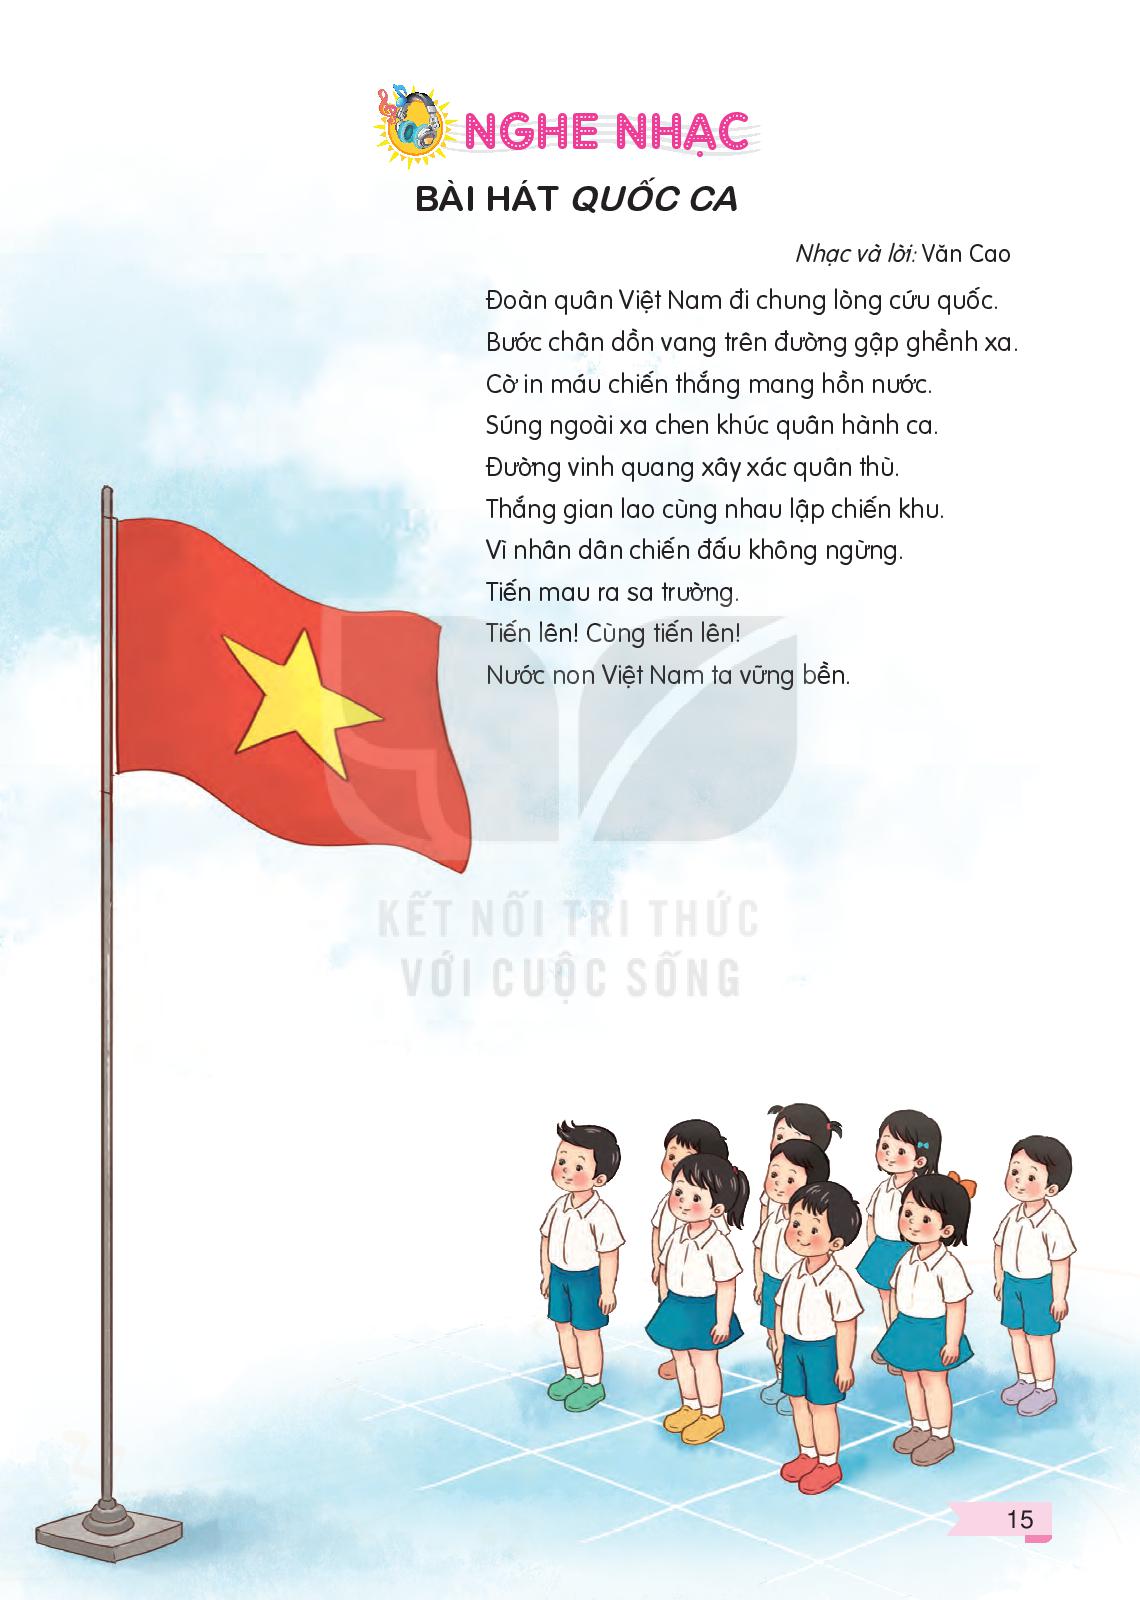 Quốc ca: Quốc ca là biểu tượng của sự tự hào và tinh thần yêu nước. Hãy cùng ngắm nhìn hình ảnh về những cảnh đẹp thiên nhiên Việt Nam, tôn vinh và hòa mình vào những giai điệu của Quốc ca để cảm nhận tình yêu đối với quê hương đất nước.